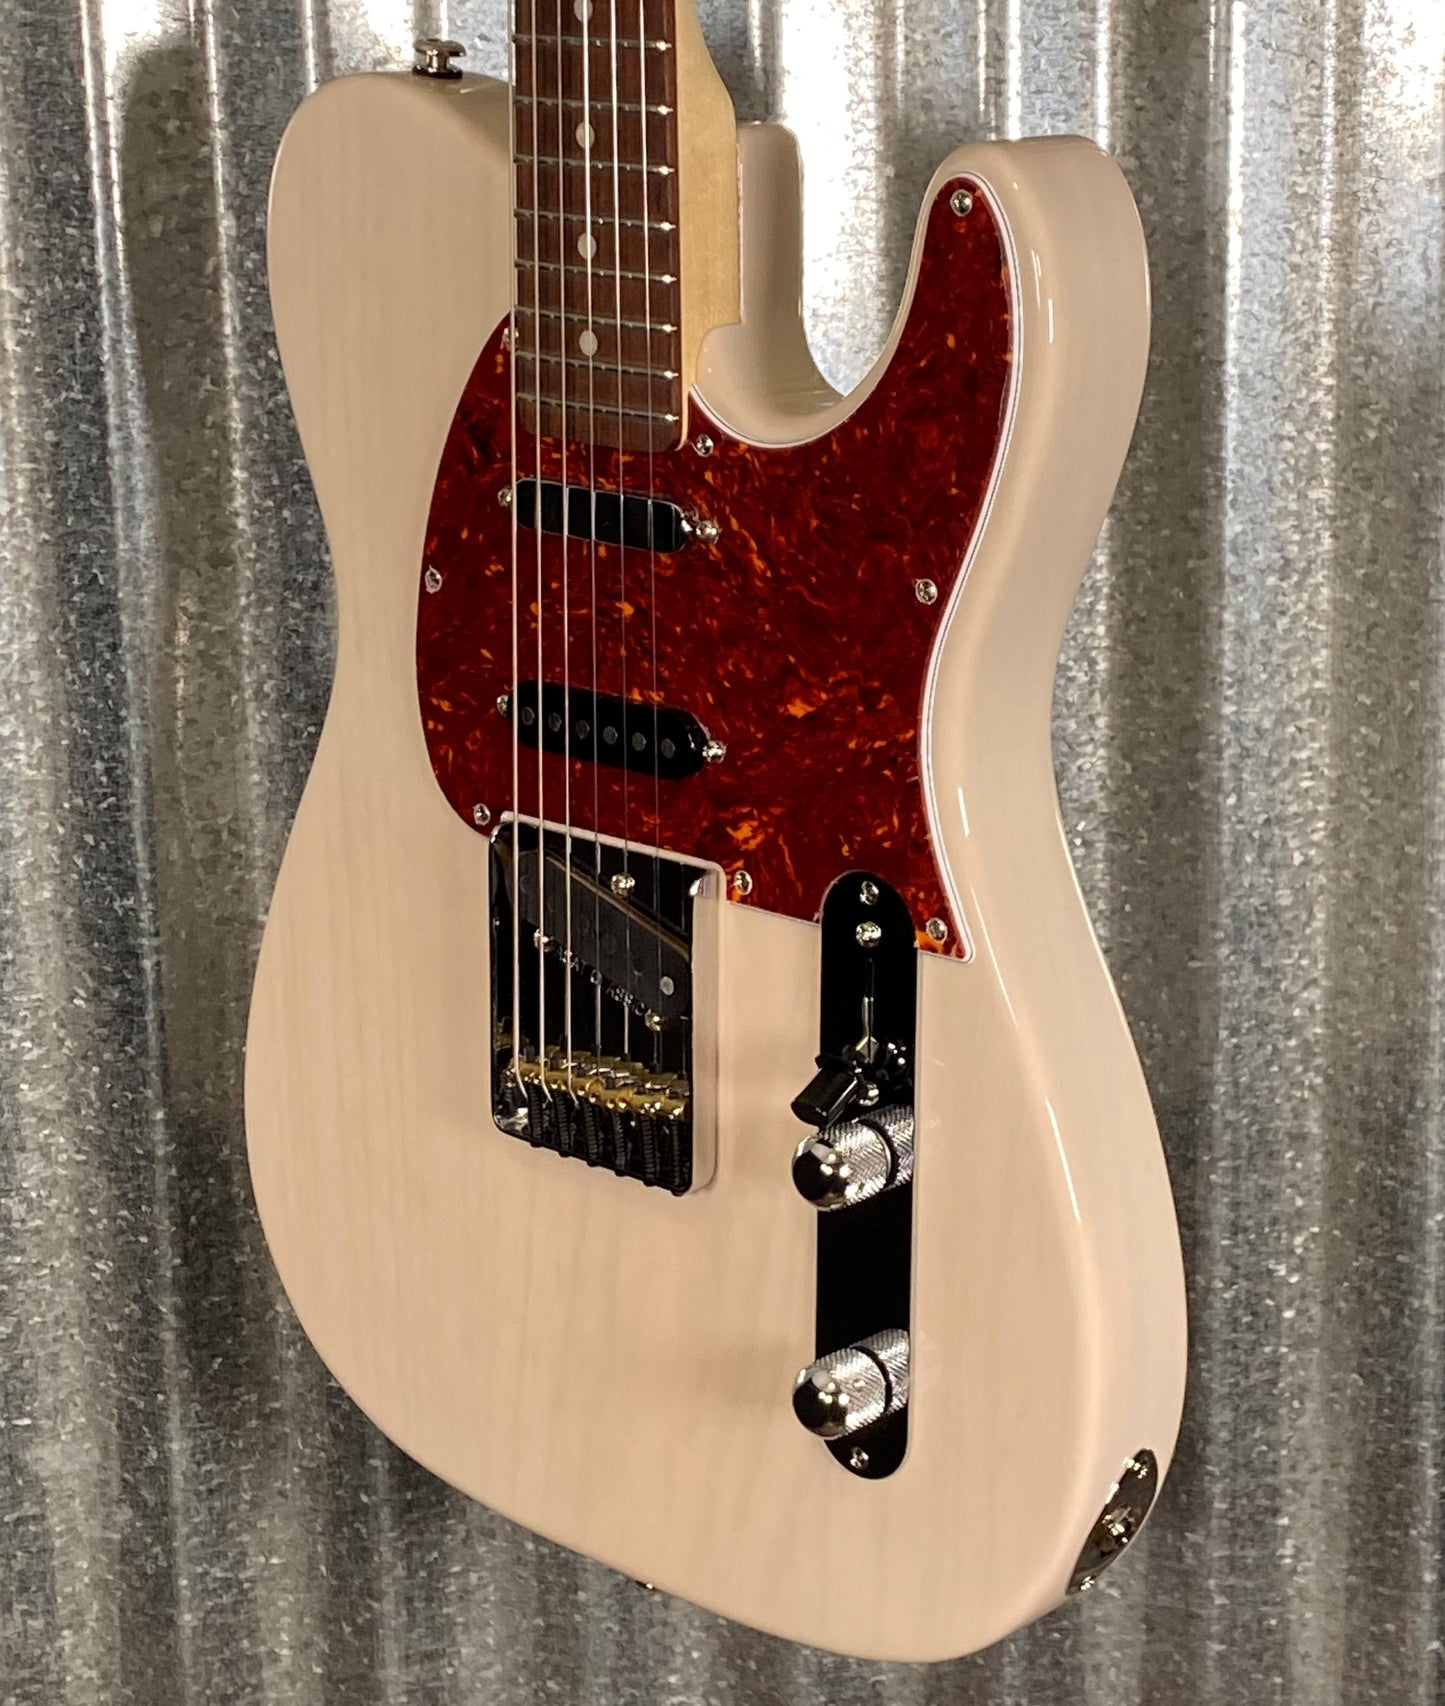 G&L USA ASAT Classic 'S' Alnico Blonde Guitar & Case #8206